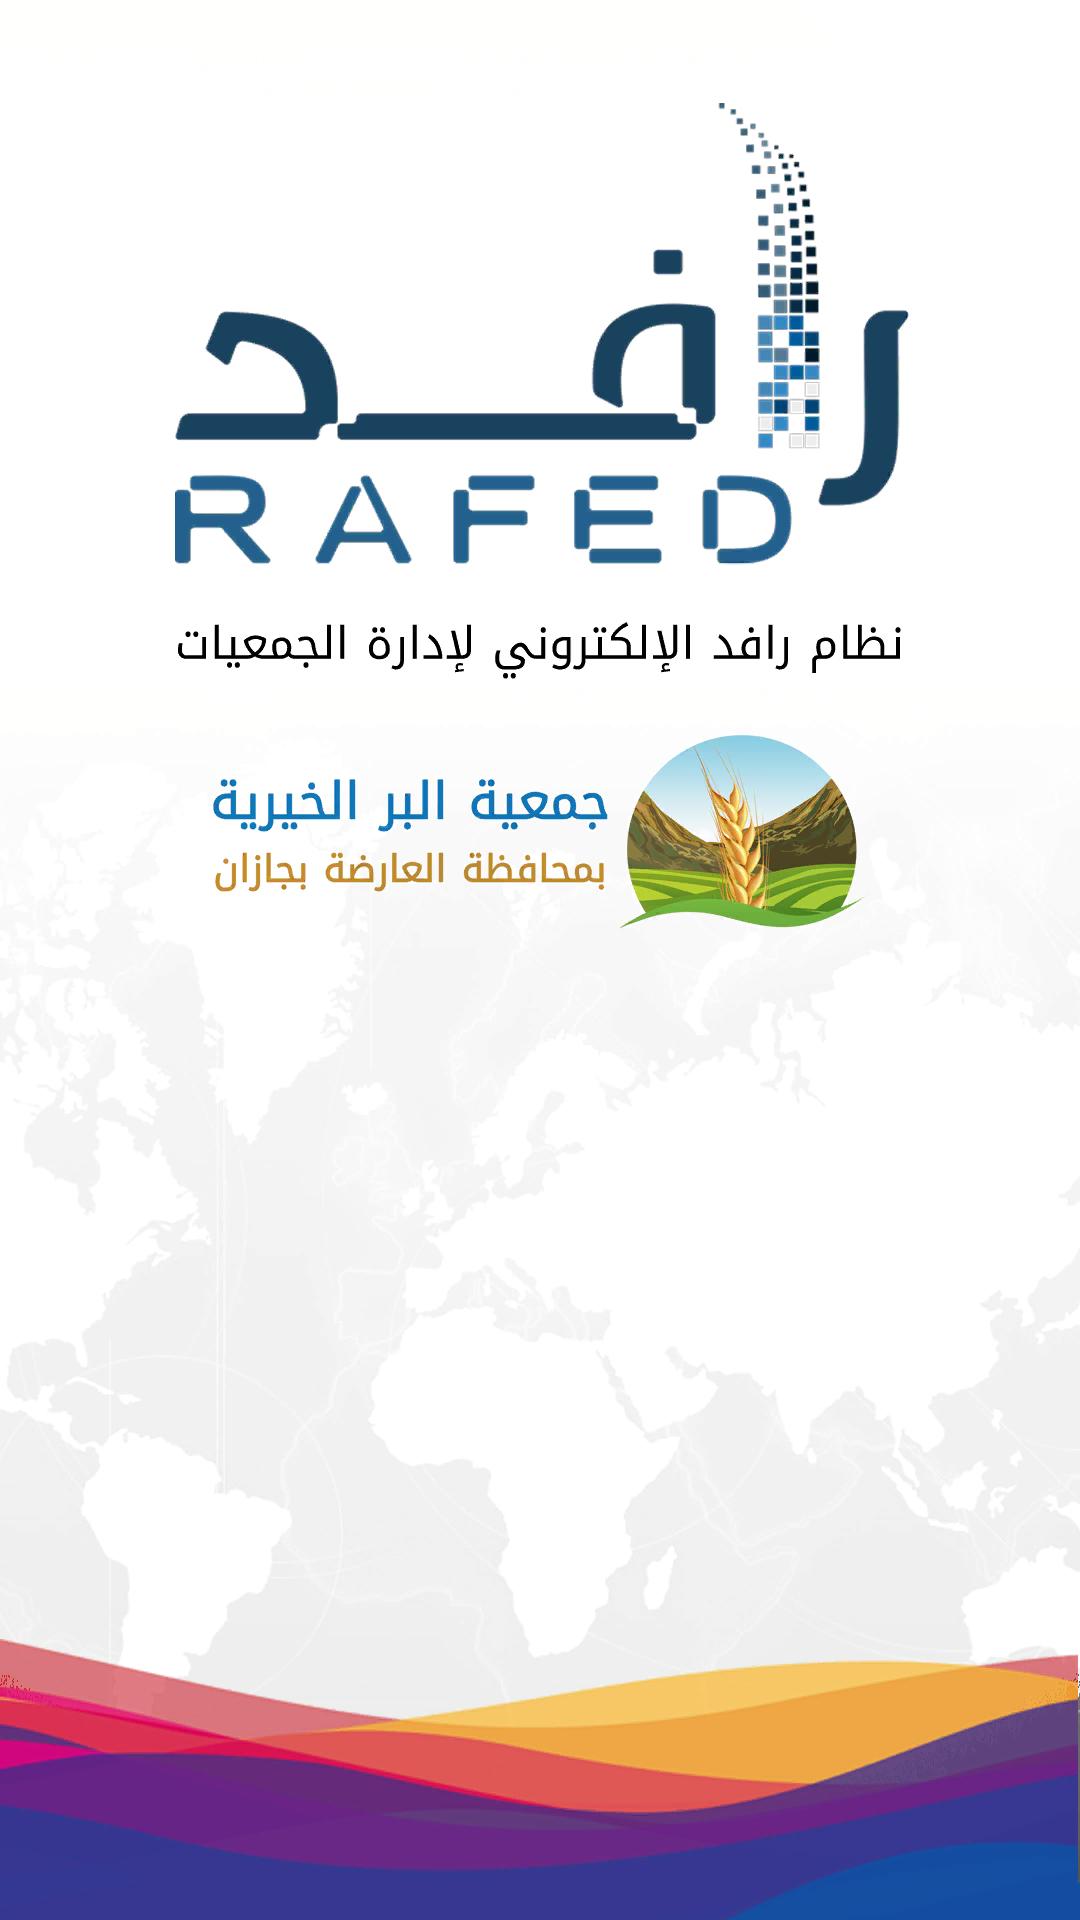 رافد - جمعية البر الخيرية بمحافظة العارضة for Android - APK Download